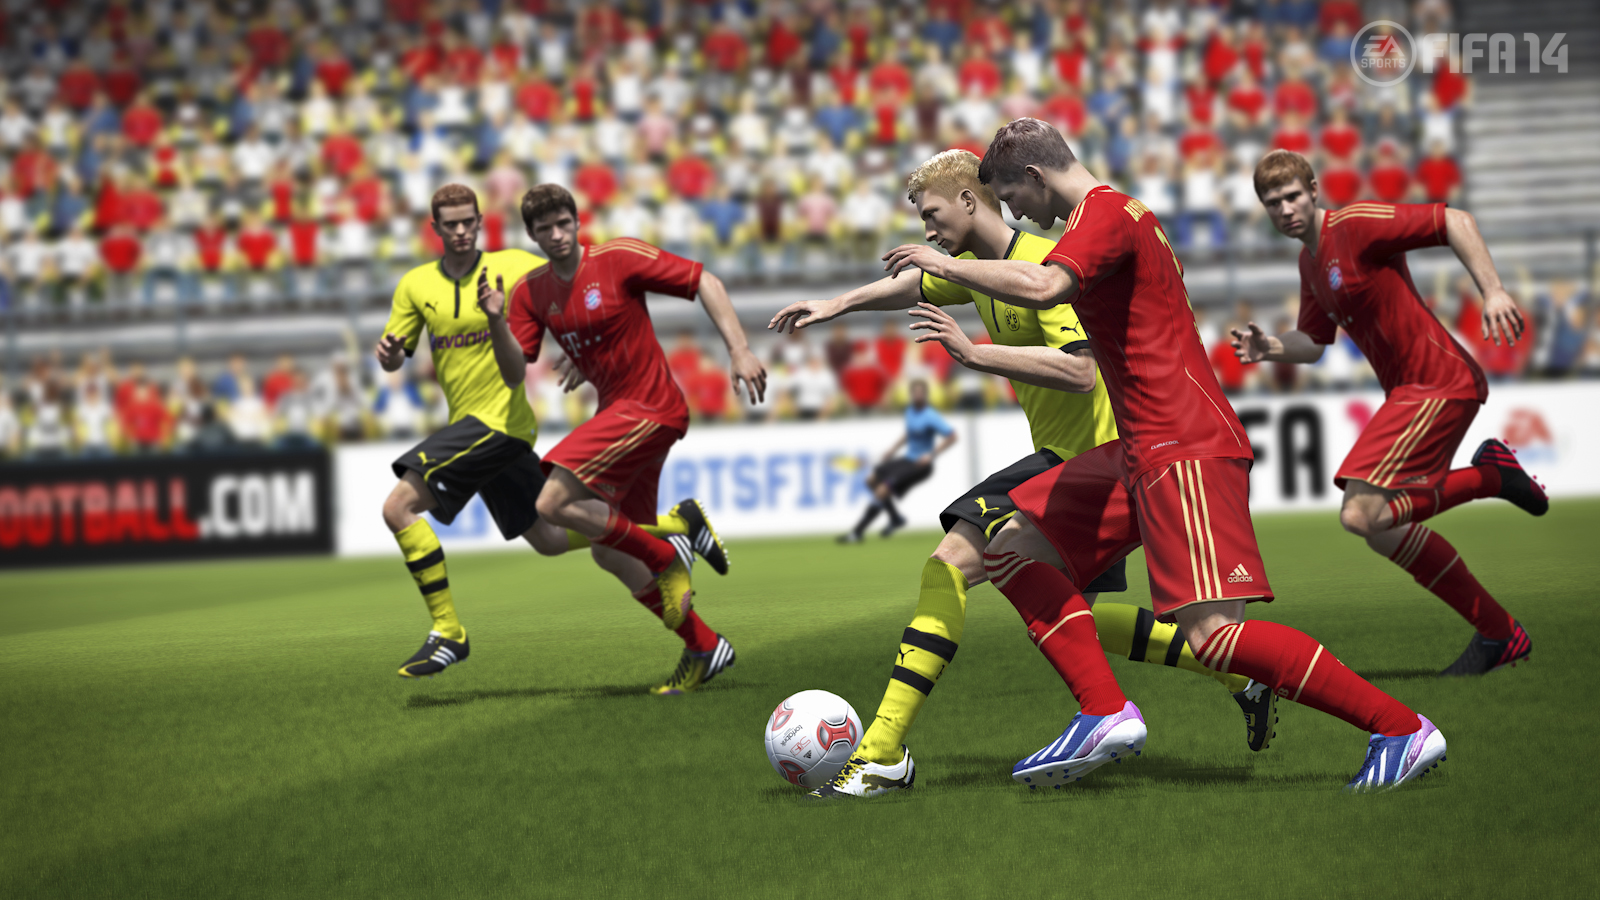 Immagine pubblicata in relazione al seguente contenuto: EA Sports annuncia FIFA 14 e mostra i primi screenshots in-game | Nome immagine: news19364_FIFA-14-screenshot_5.jpg